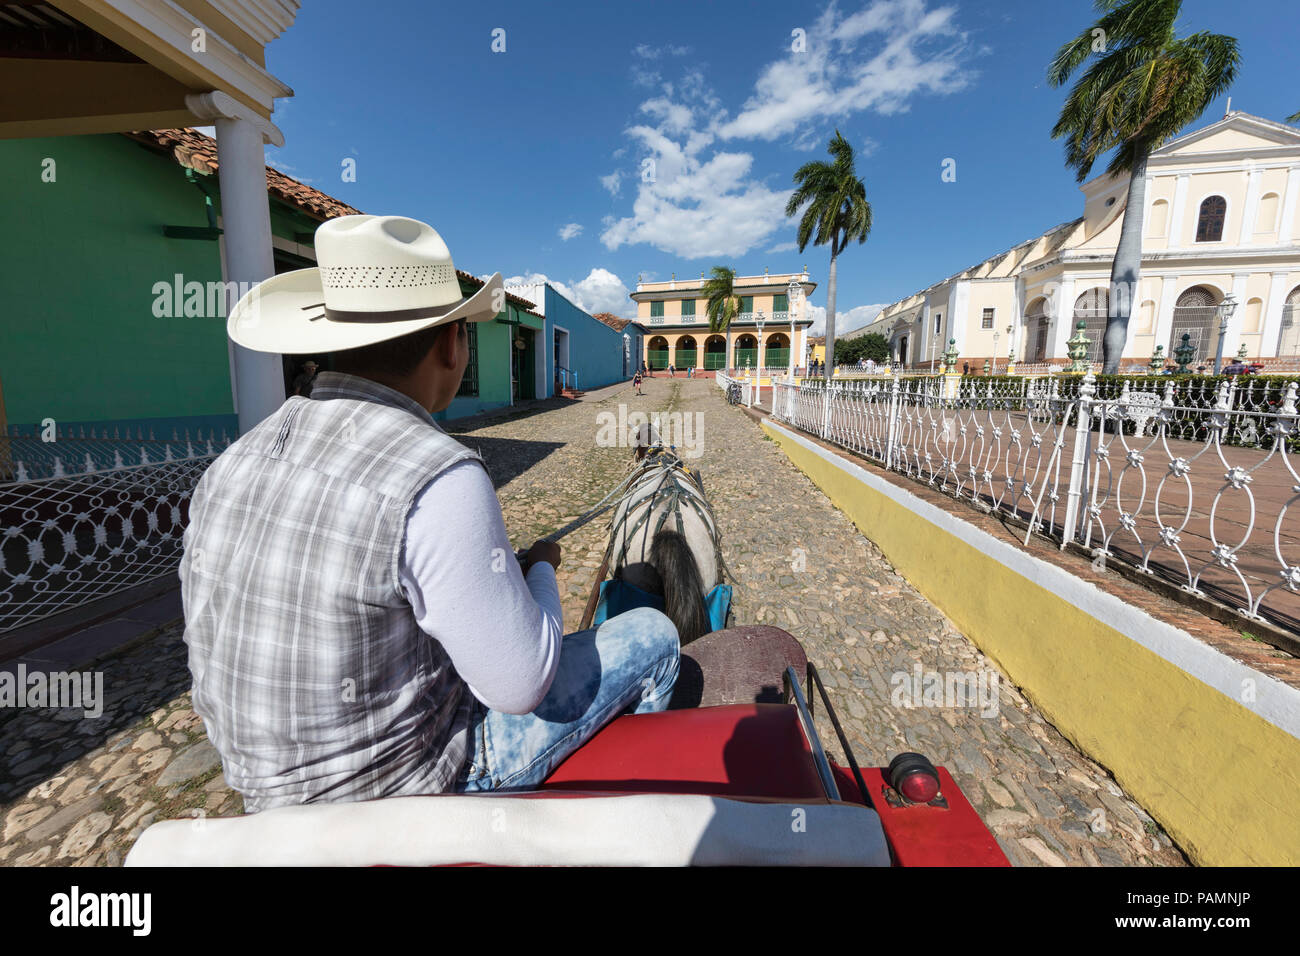 Ein Pferdefuhrwerk lokal bekannt als Coche in Plaza Mayor, in der zum UNESCO-Weltkulturerbe gehörenden Stadt Trinidad, Kuba. Stockfoto